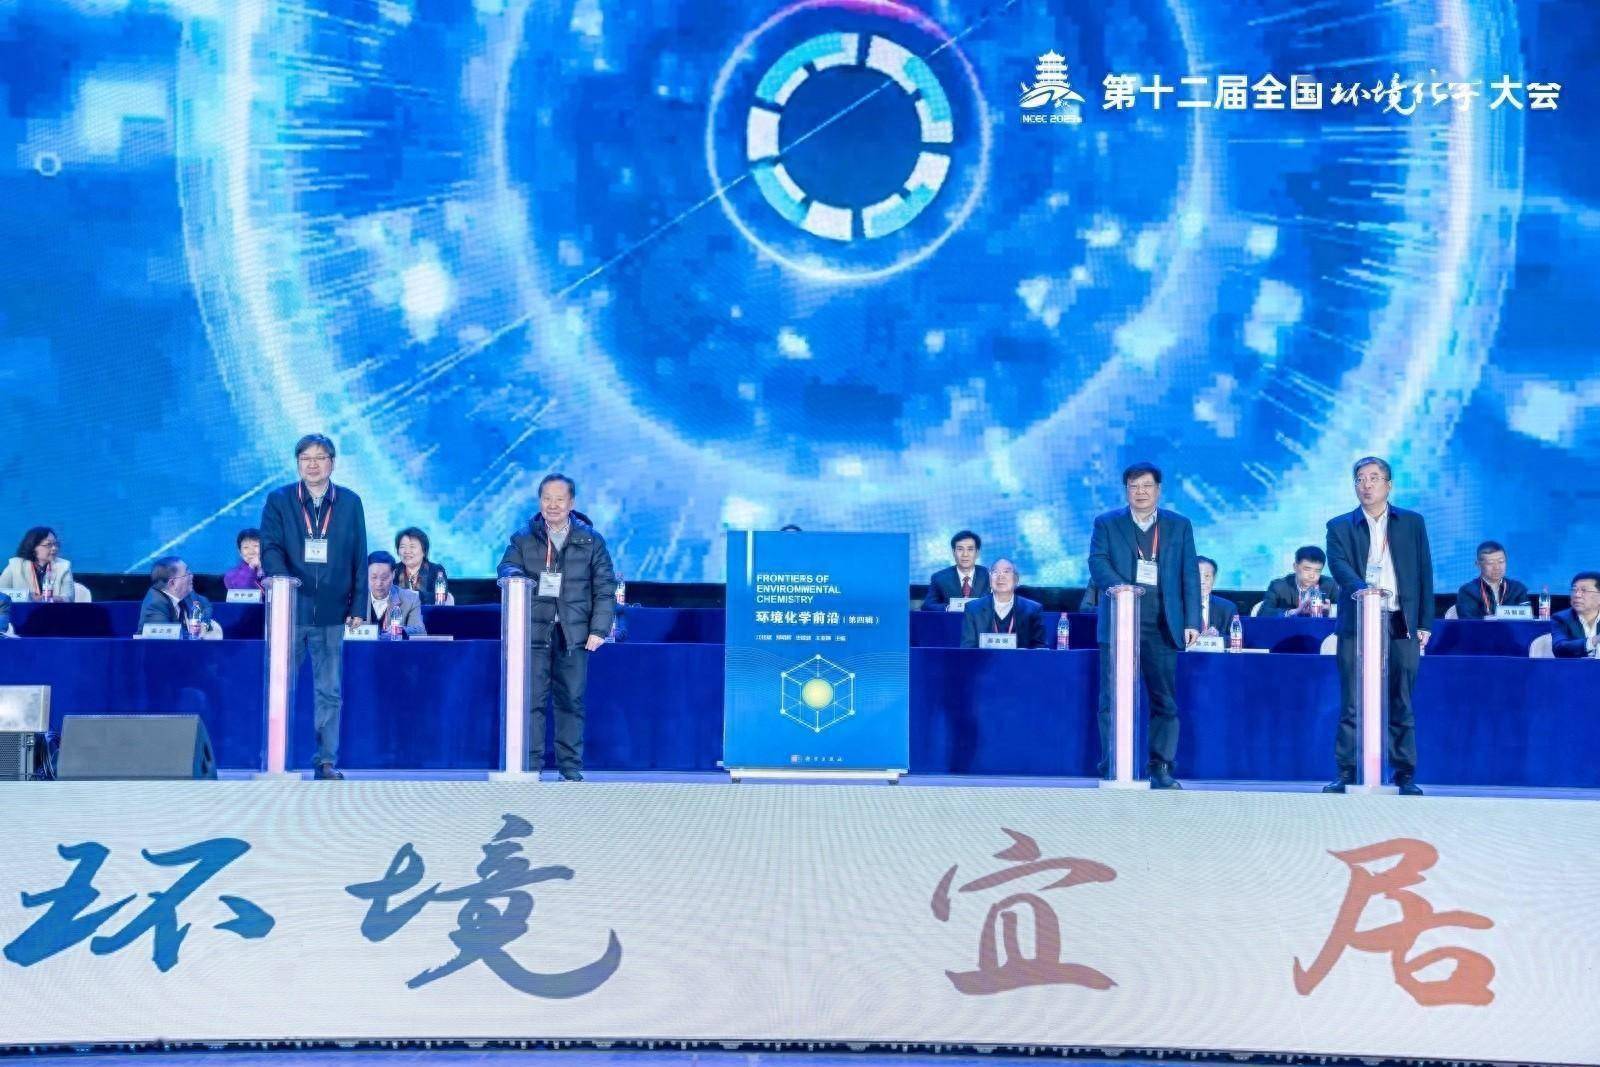 第十二届全国环境化学大会在汉举行，柴之芳院士获颁环境化学终身成就奖